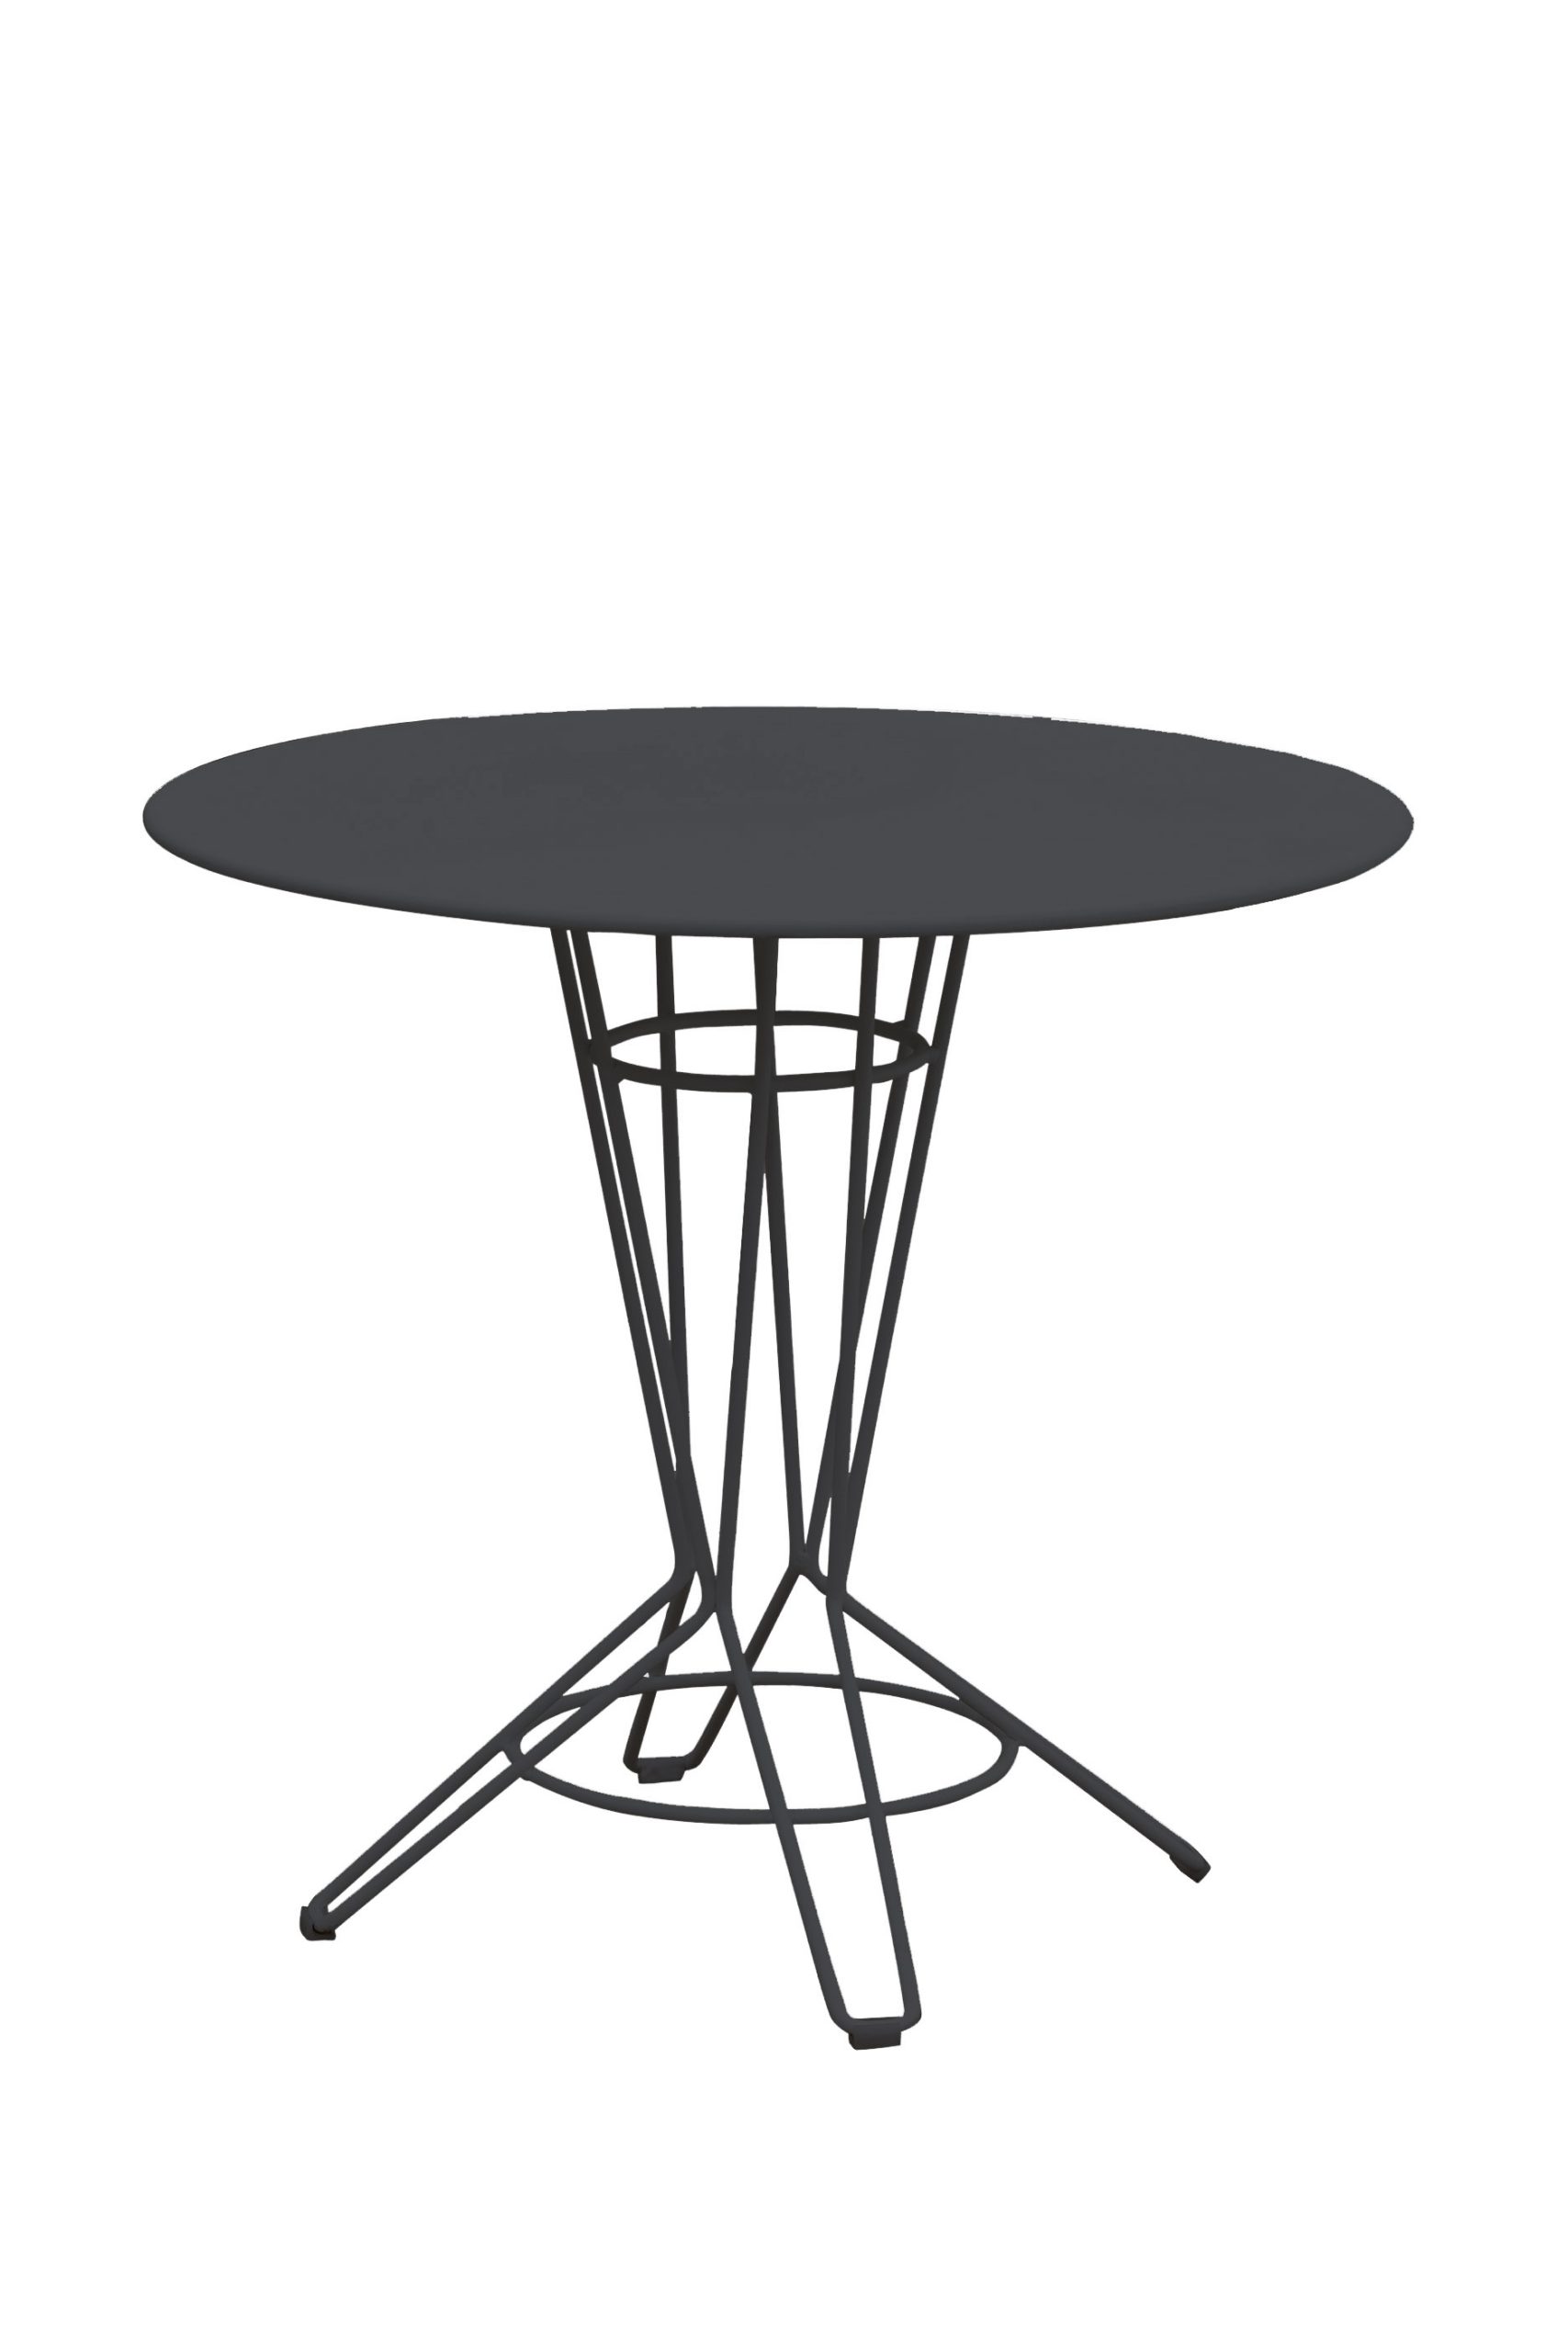 NOSTRUM - Table rond en acier gris anthracite D80